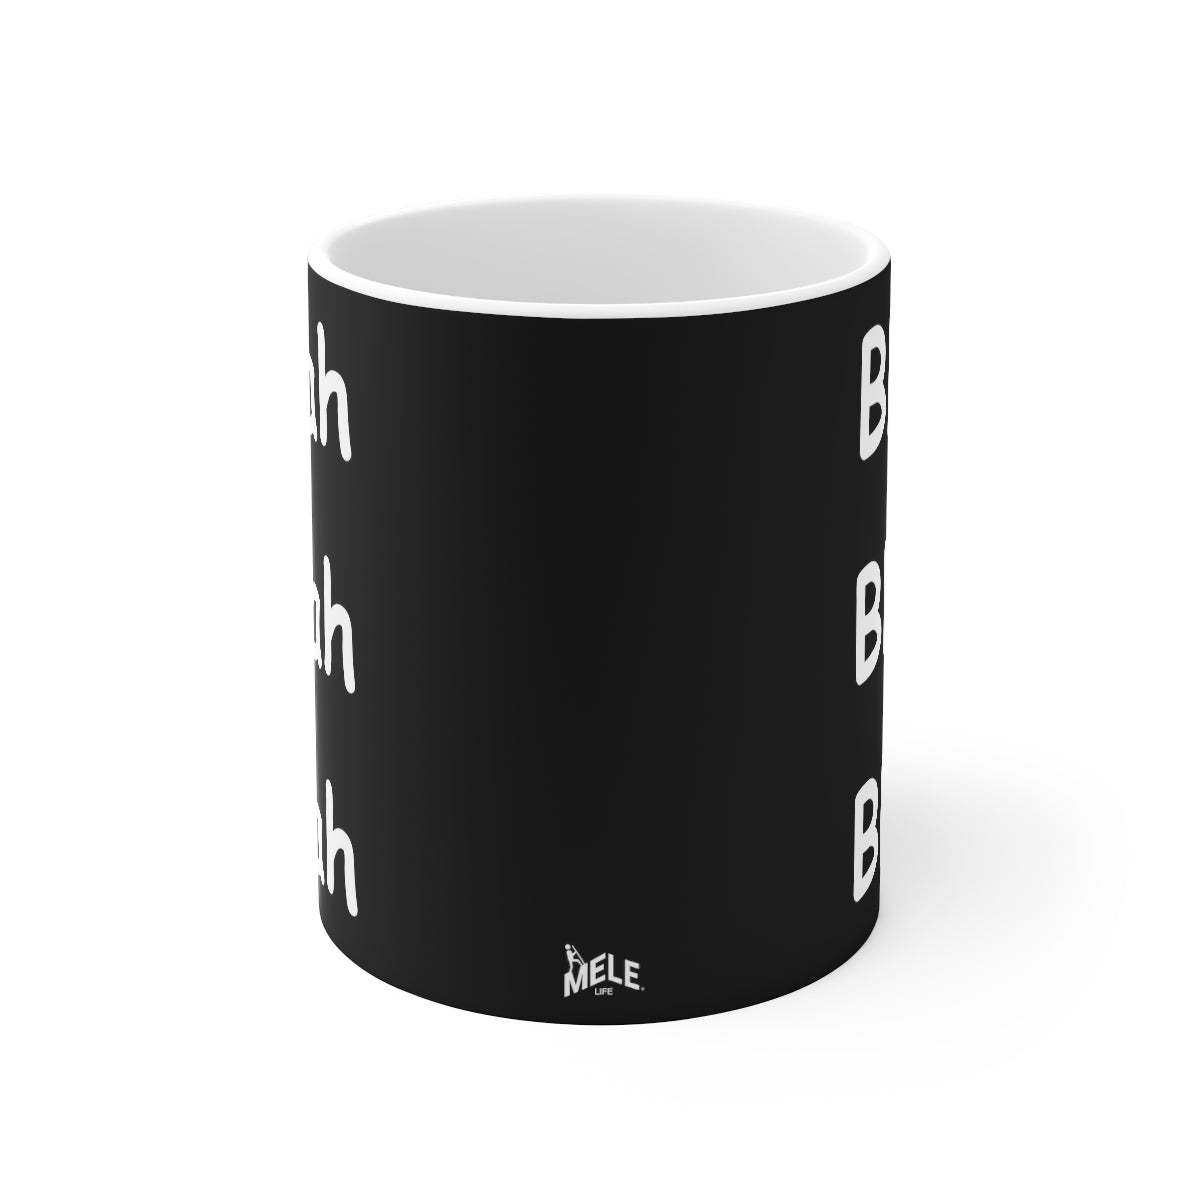 Coffee Mug - Blah Blah Blah   (black)